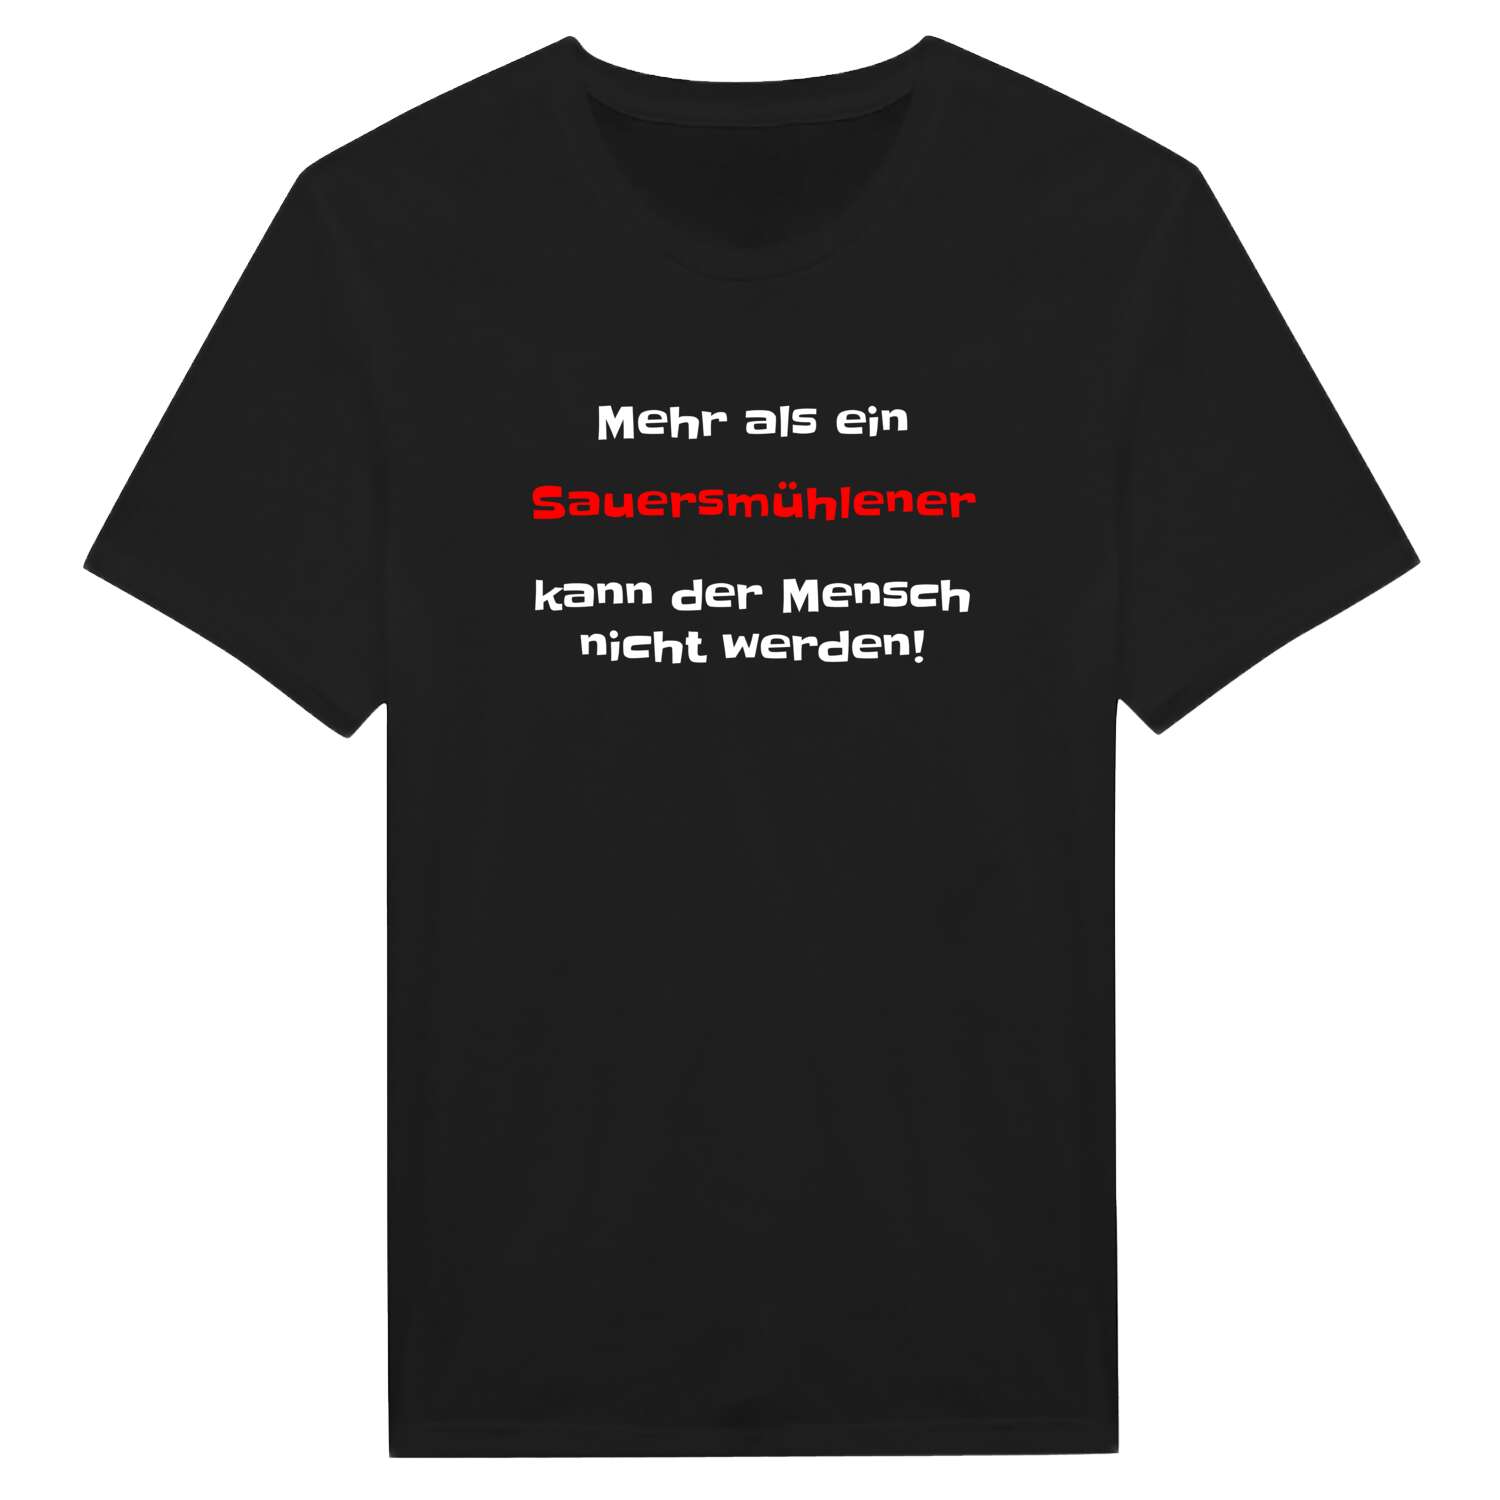 Sauersmühle T-Shirt »Mehr als ein«